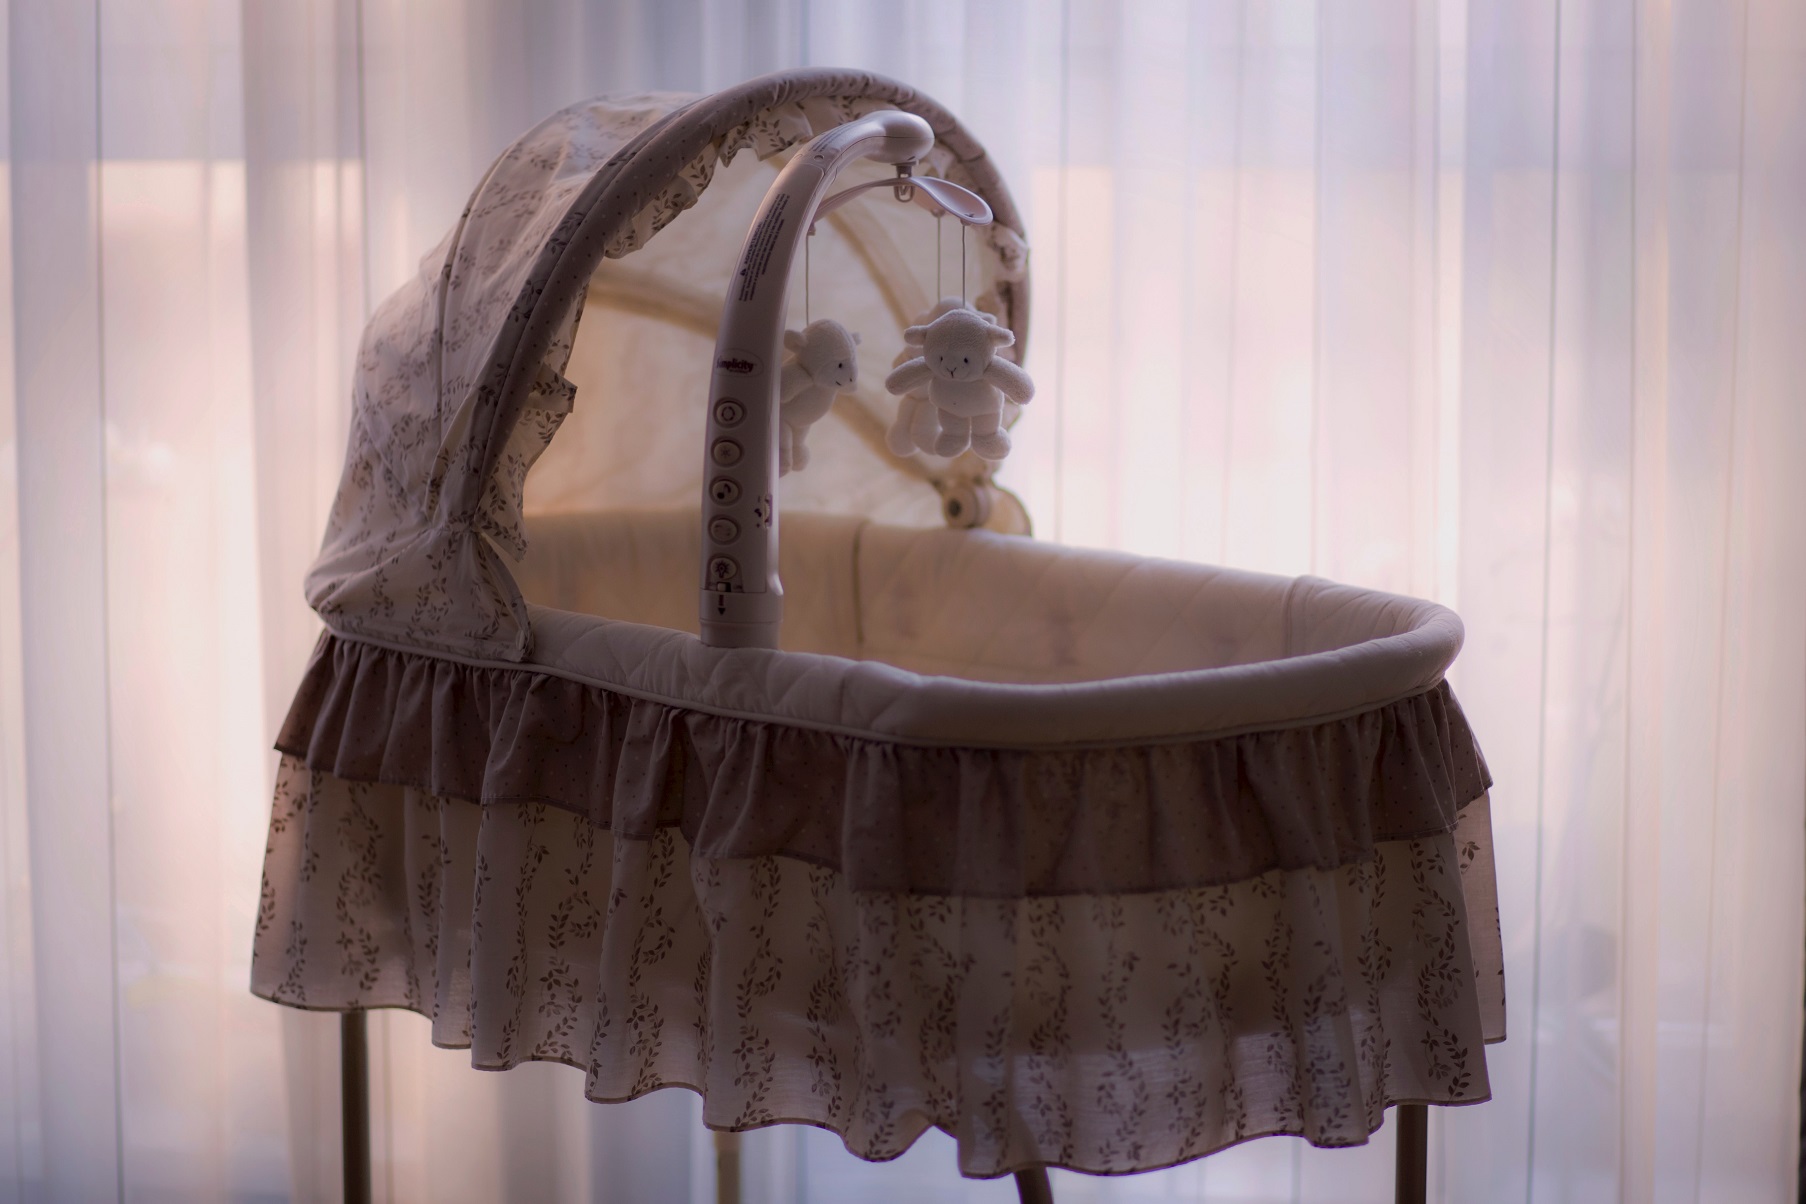 Je bekijkt nu Wat zijn de leukste babykamer trends van dit moment?